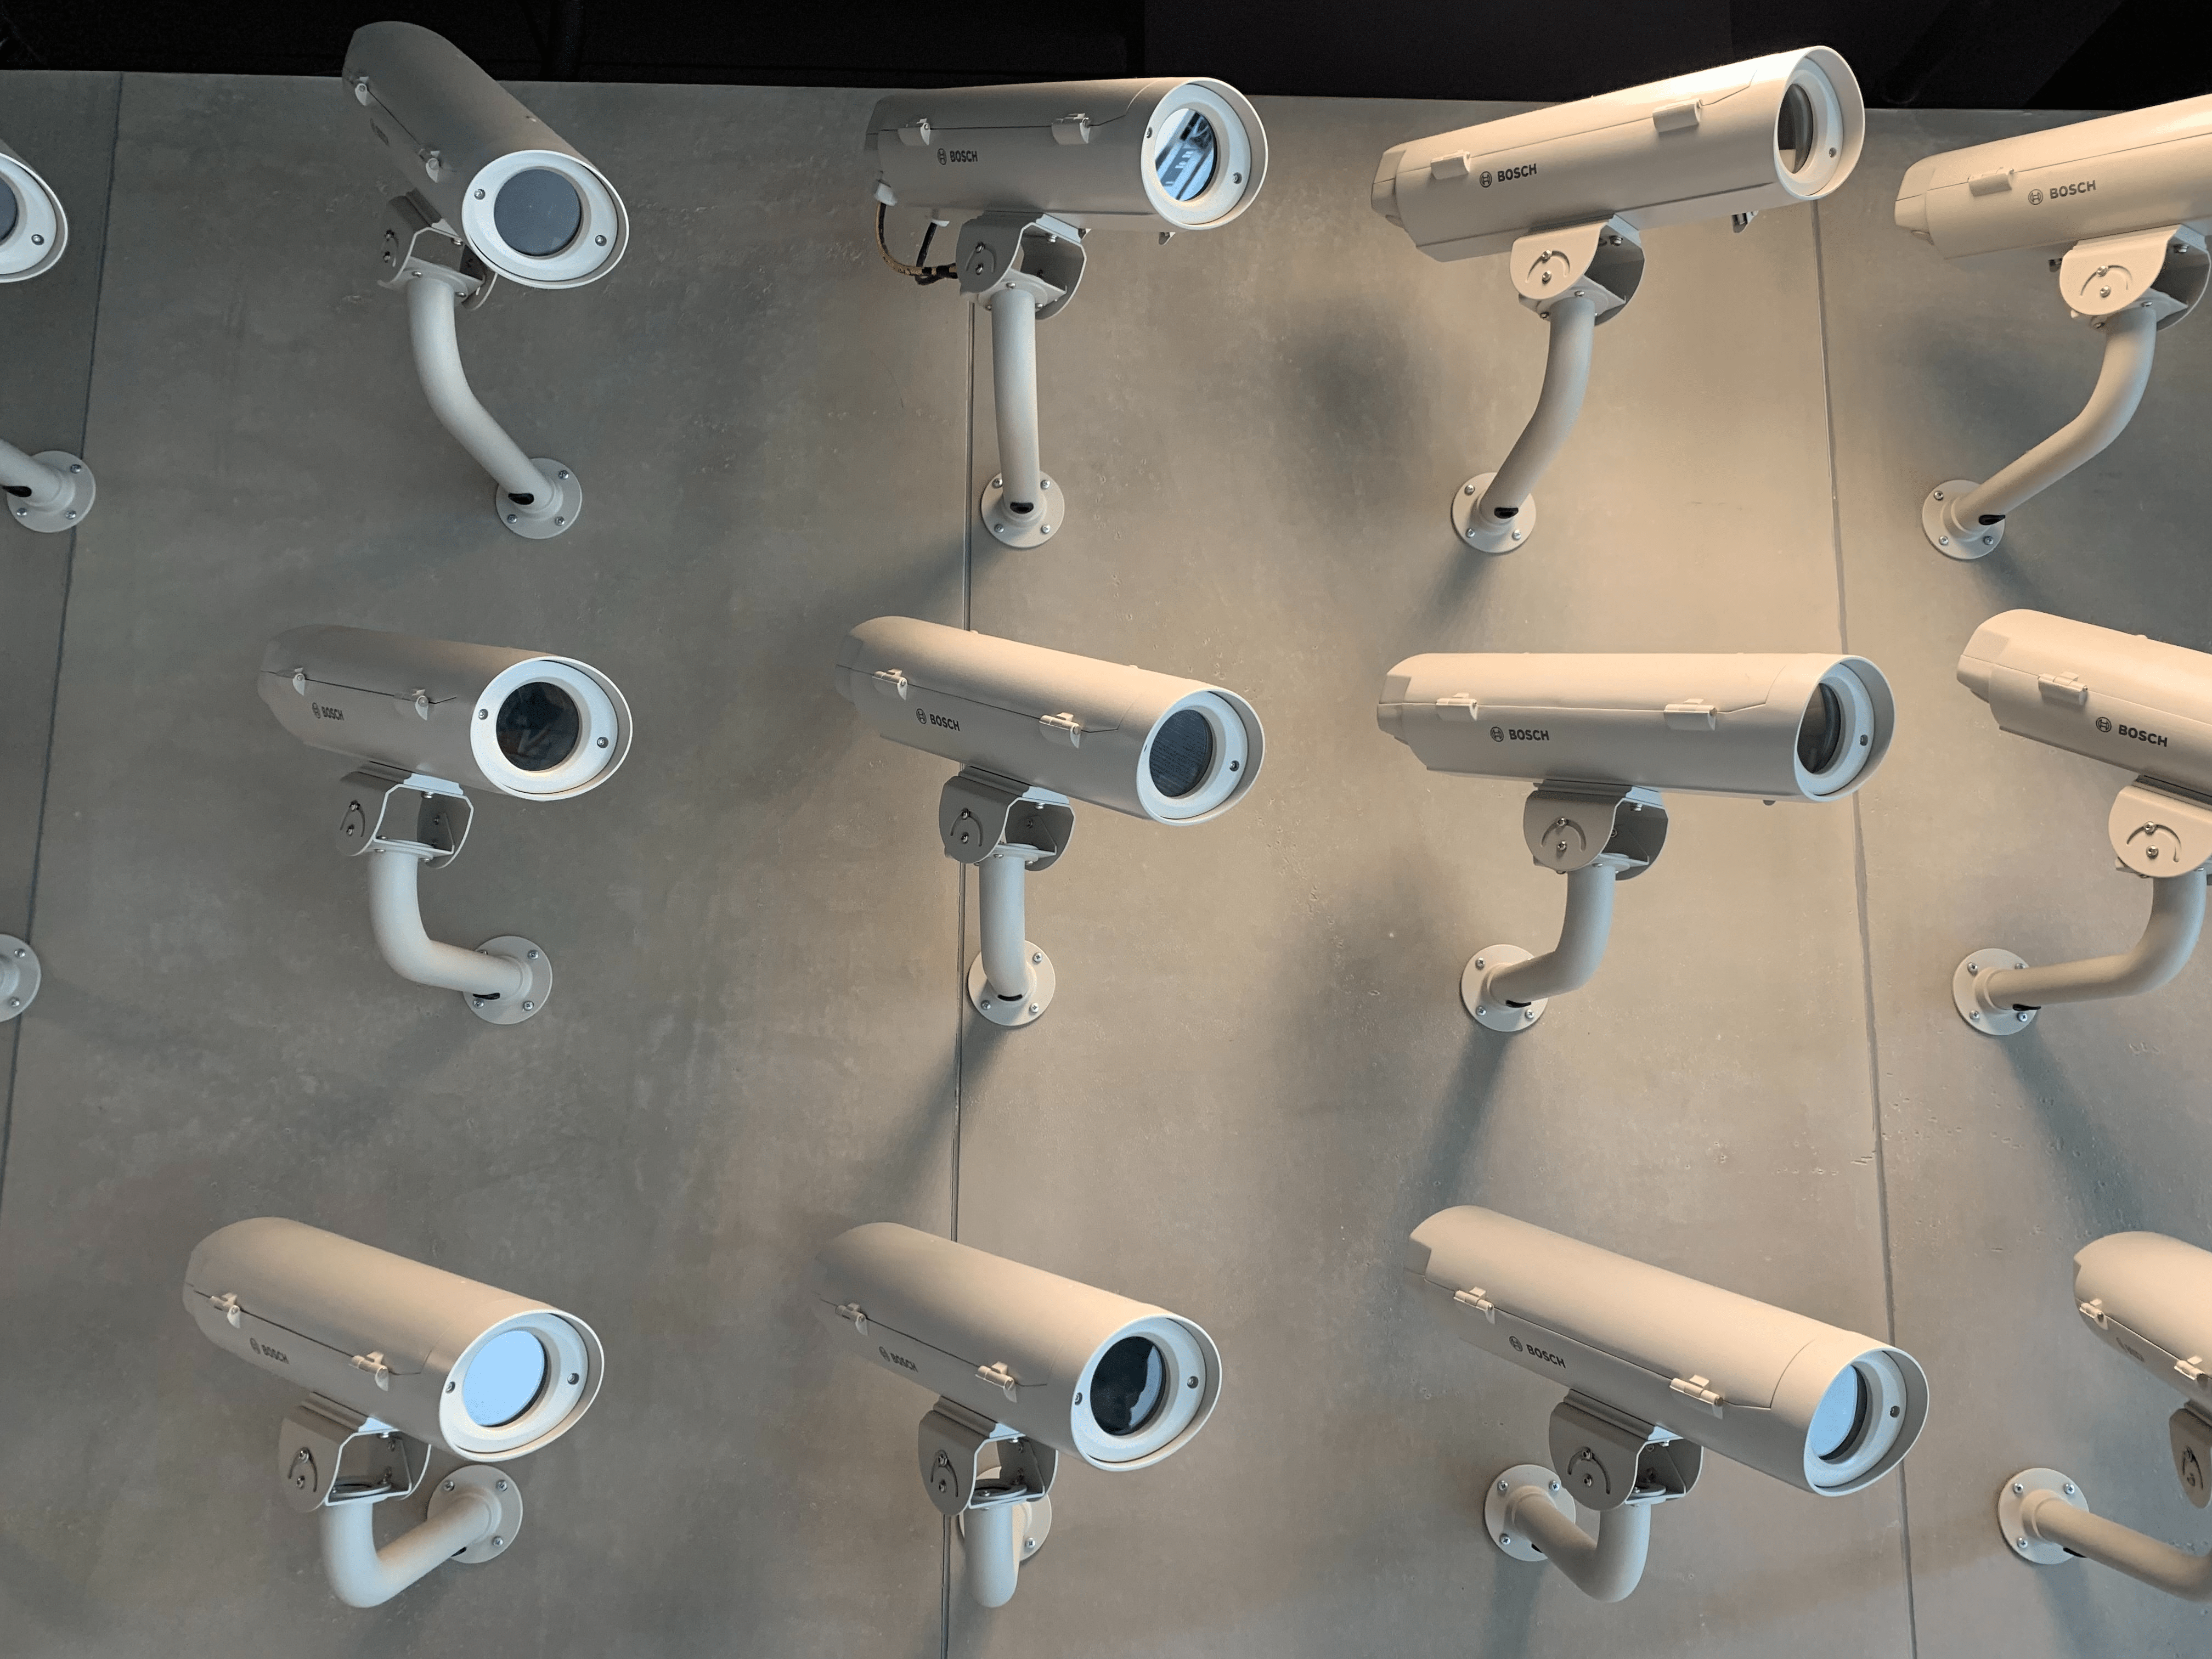 Common CCTV Problems